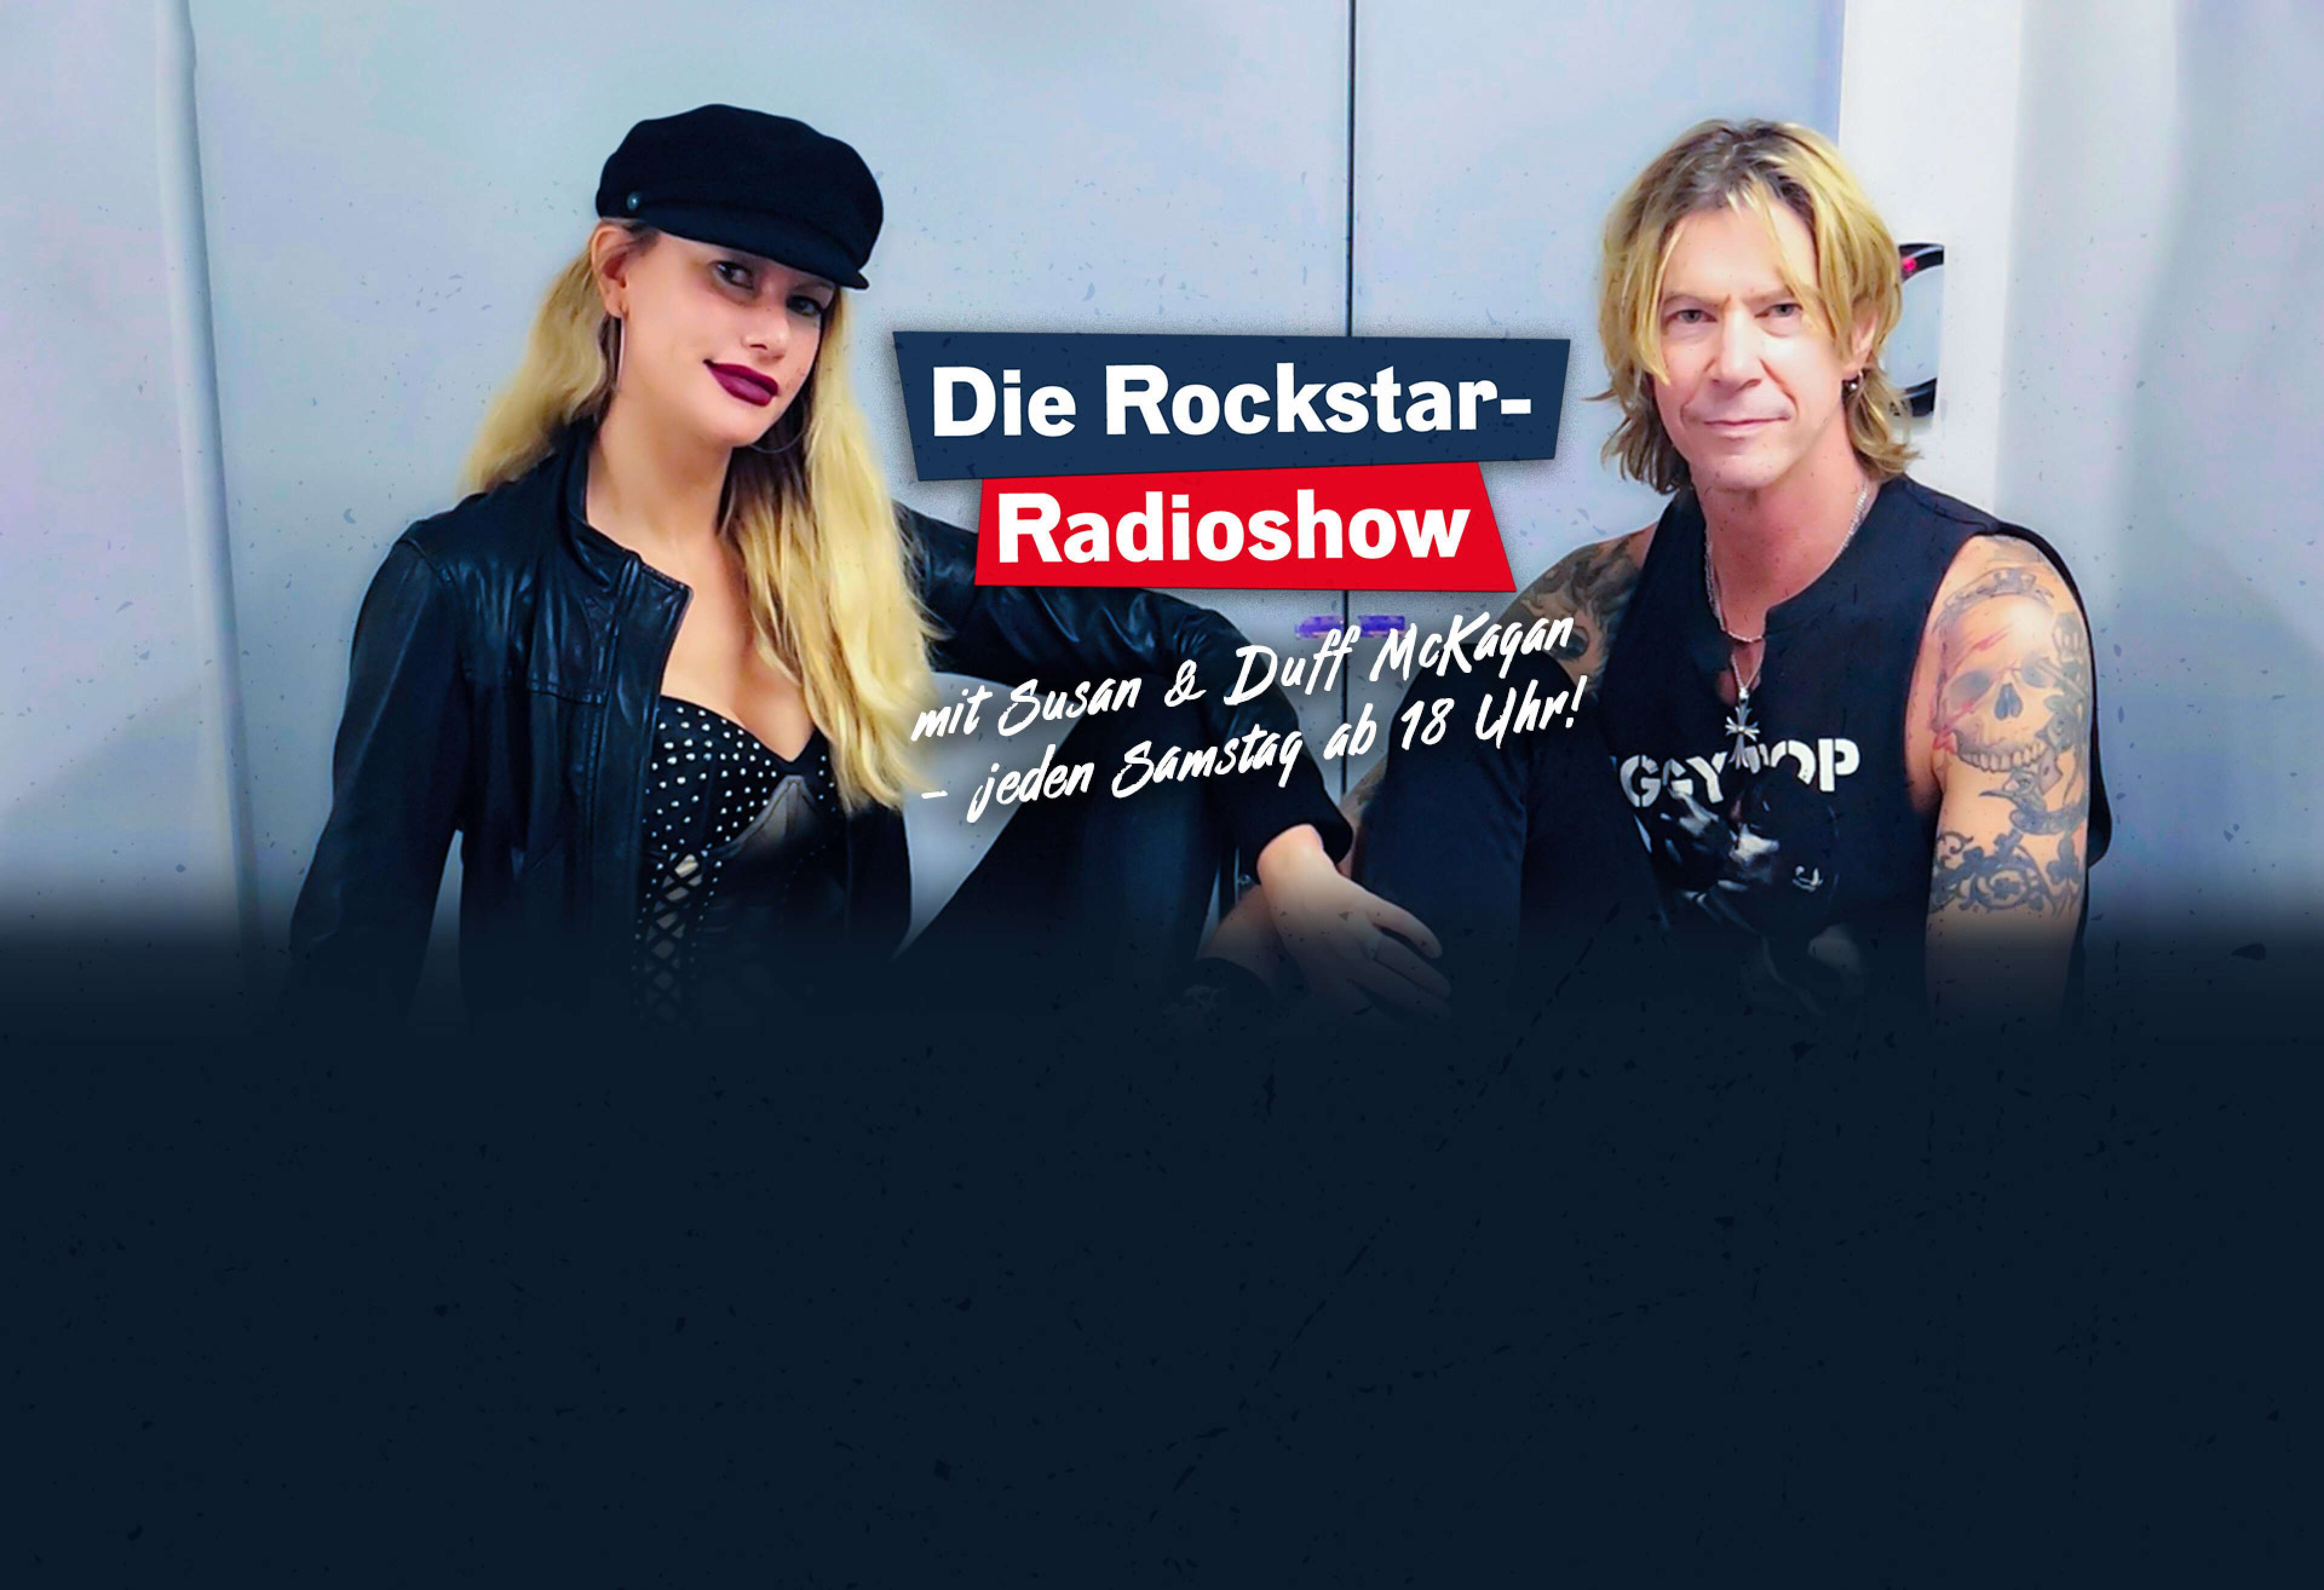 Susan und Duff McKagan vor einem grauen Hintergrund. Darauf ein Schriftzug "Die Rockstar-Radioshow mit Susan & Duff McKagan - Radio an!"